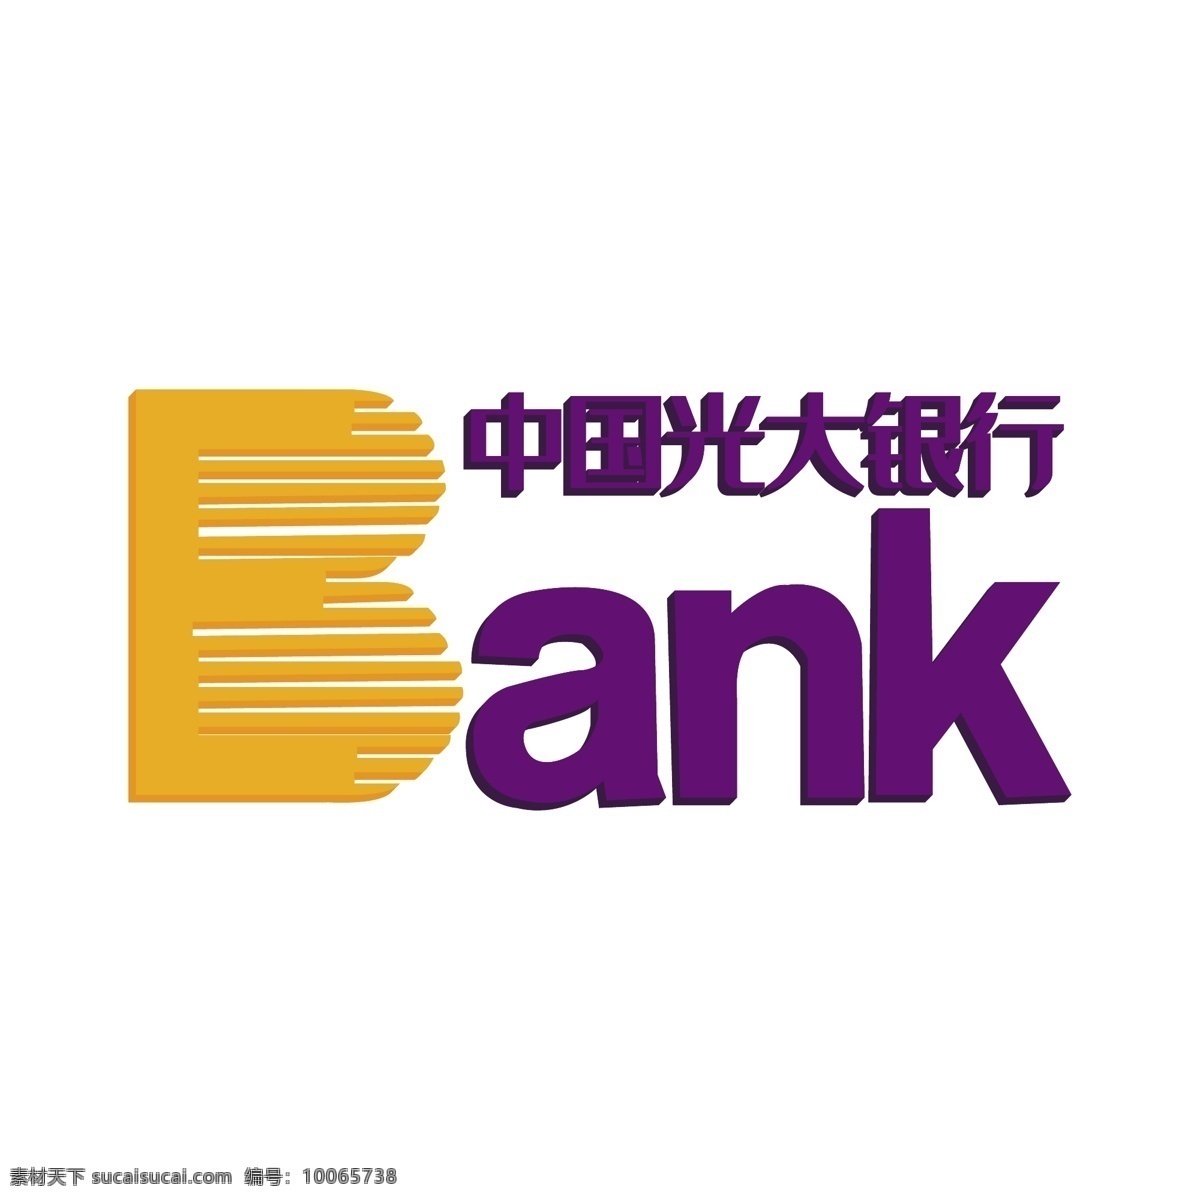 中国光大银行 logo 图标 紫色 银行logo 金融机构 手机 app 免抠图png 千库原创 货币信贷 矢量银行